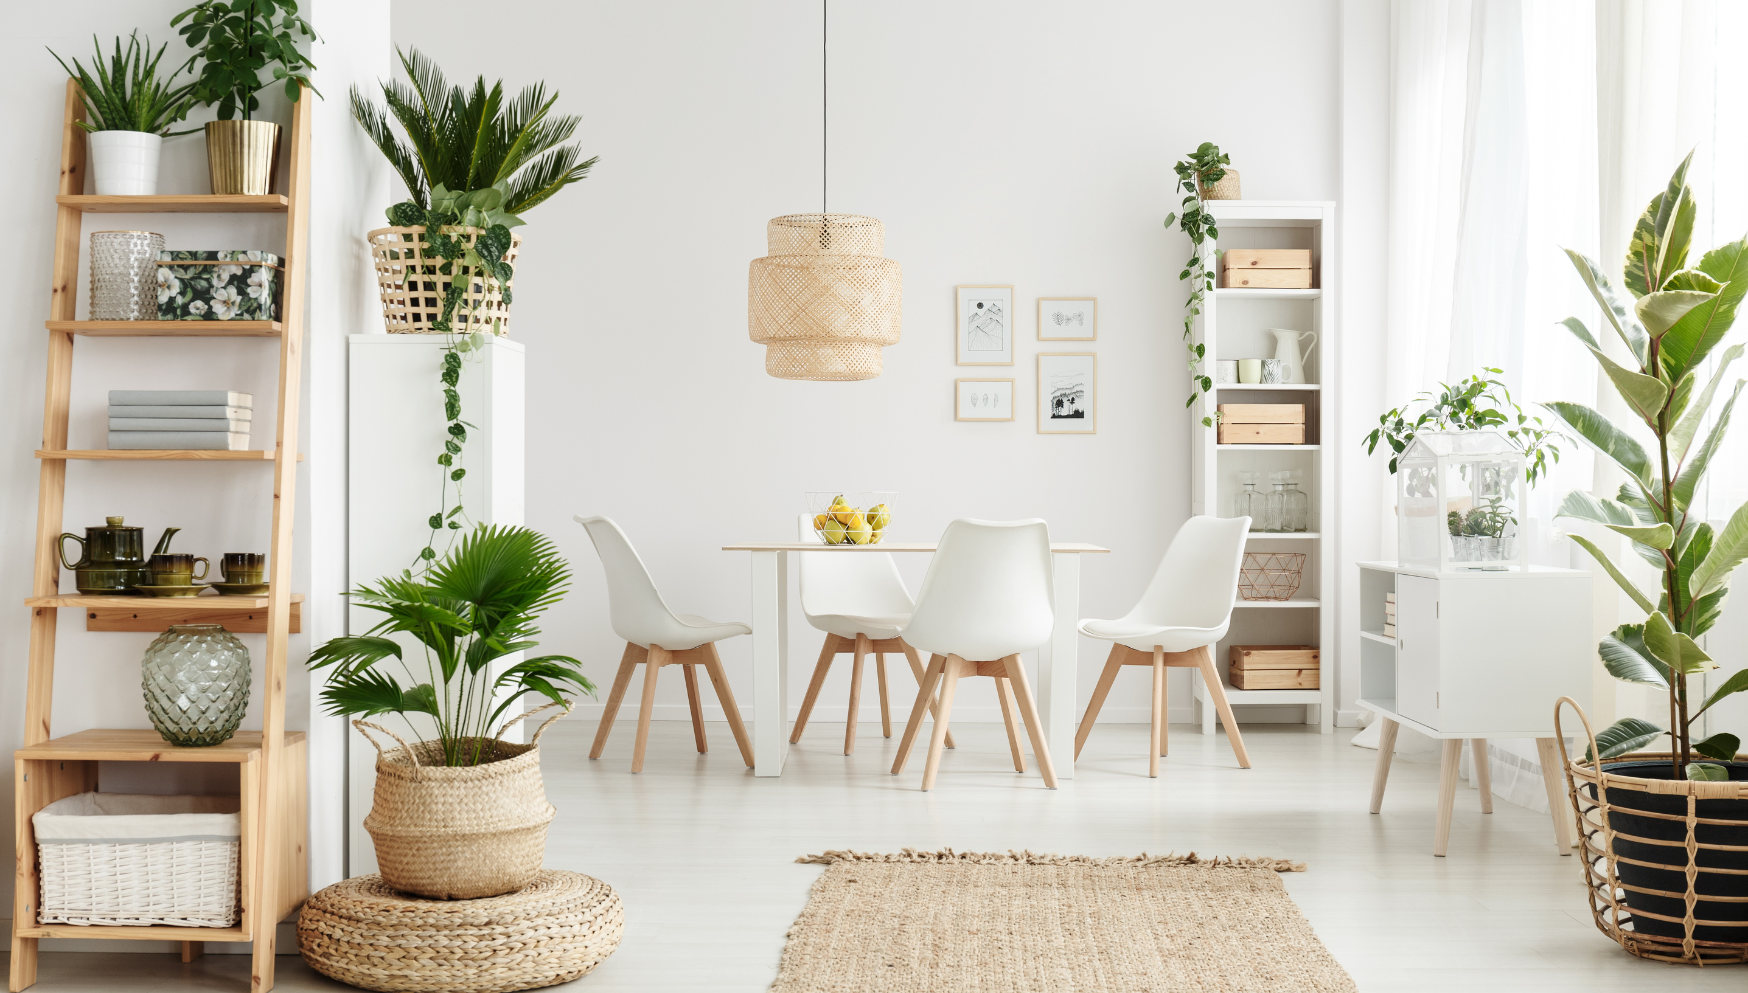 met kamerplanten passend jouw interieur stijl | PLNTS.com